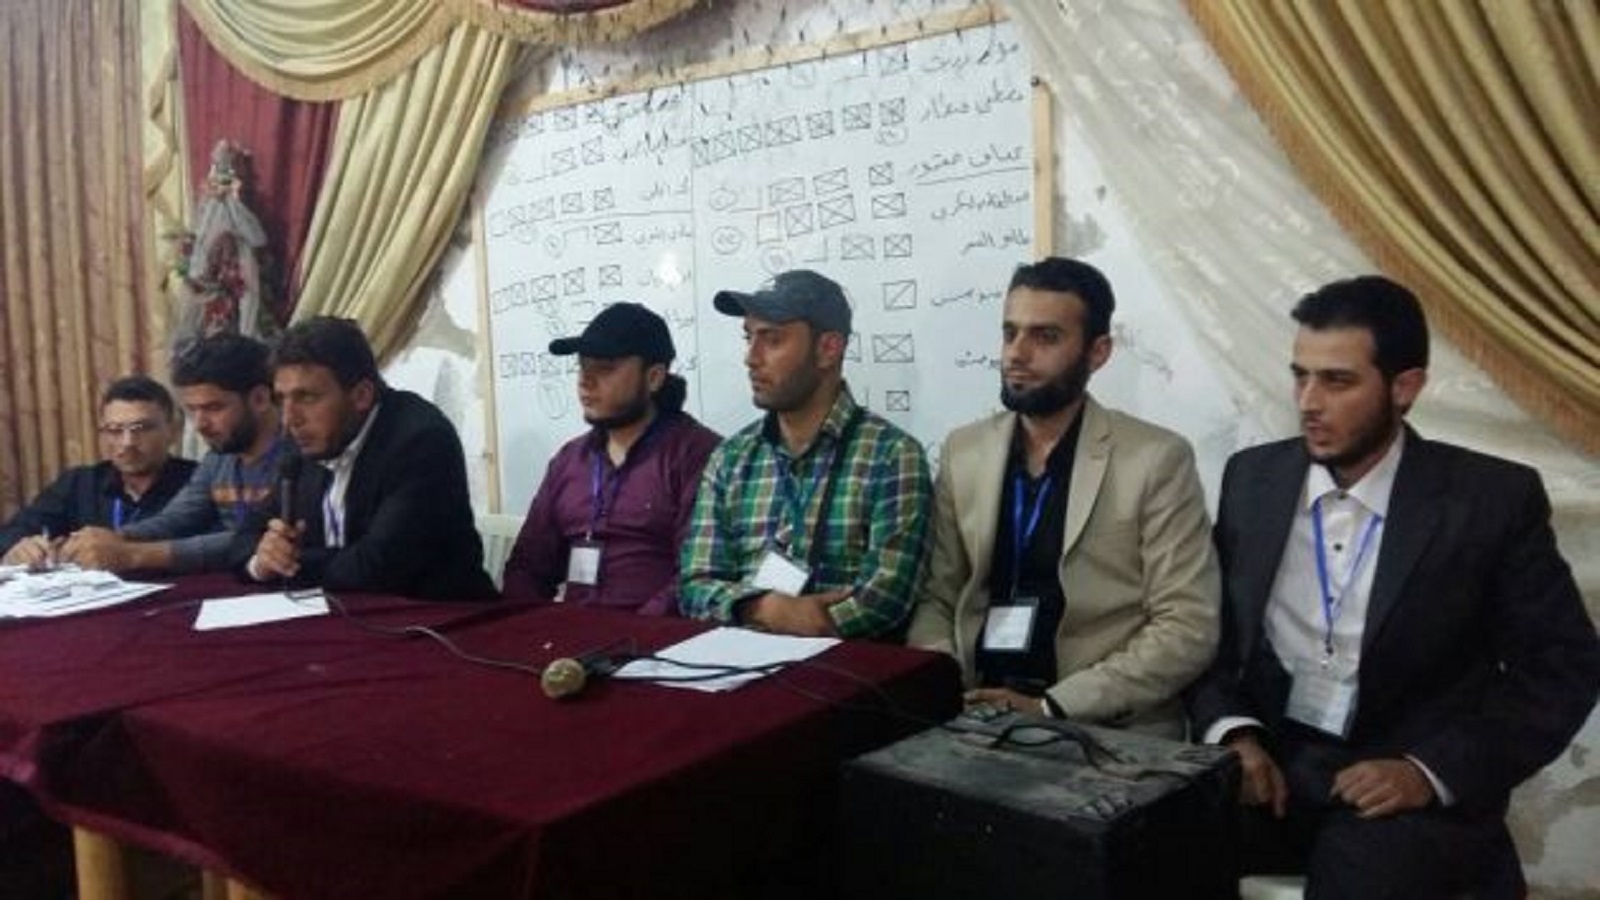 ناشطون يطلقون "المؤسسة العامة للإعلام" في إدلب